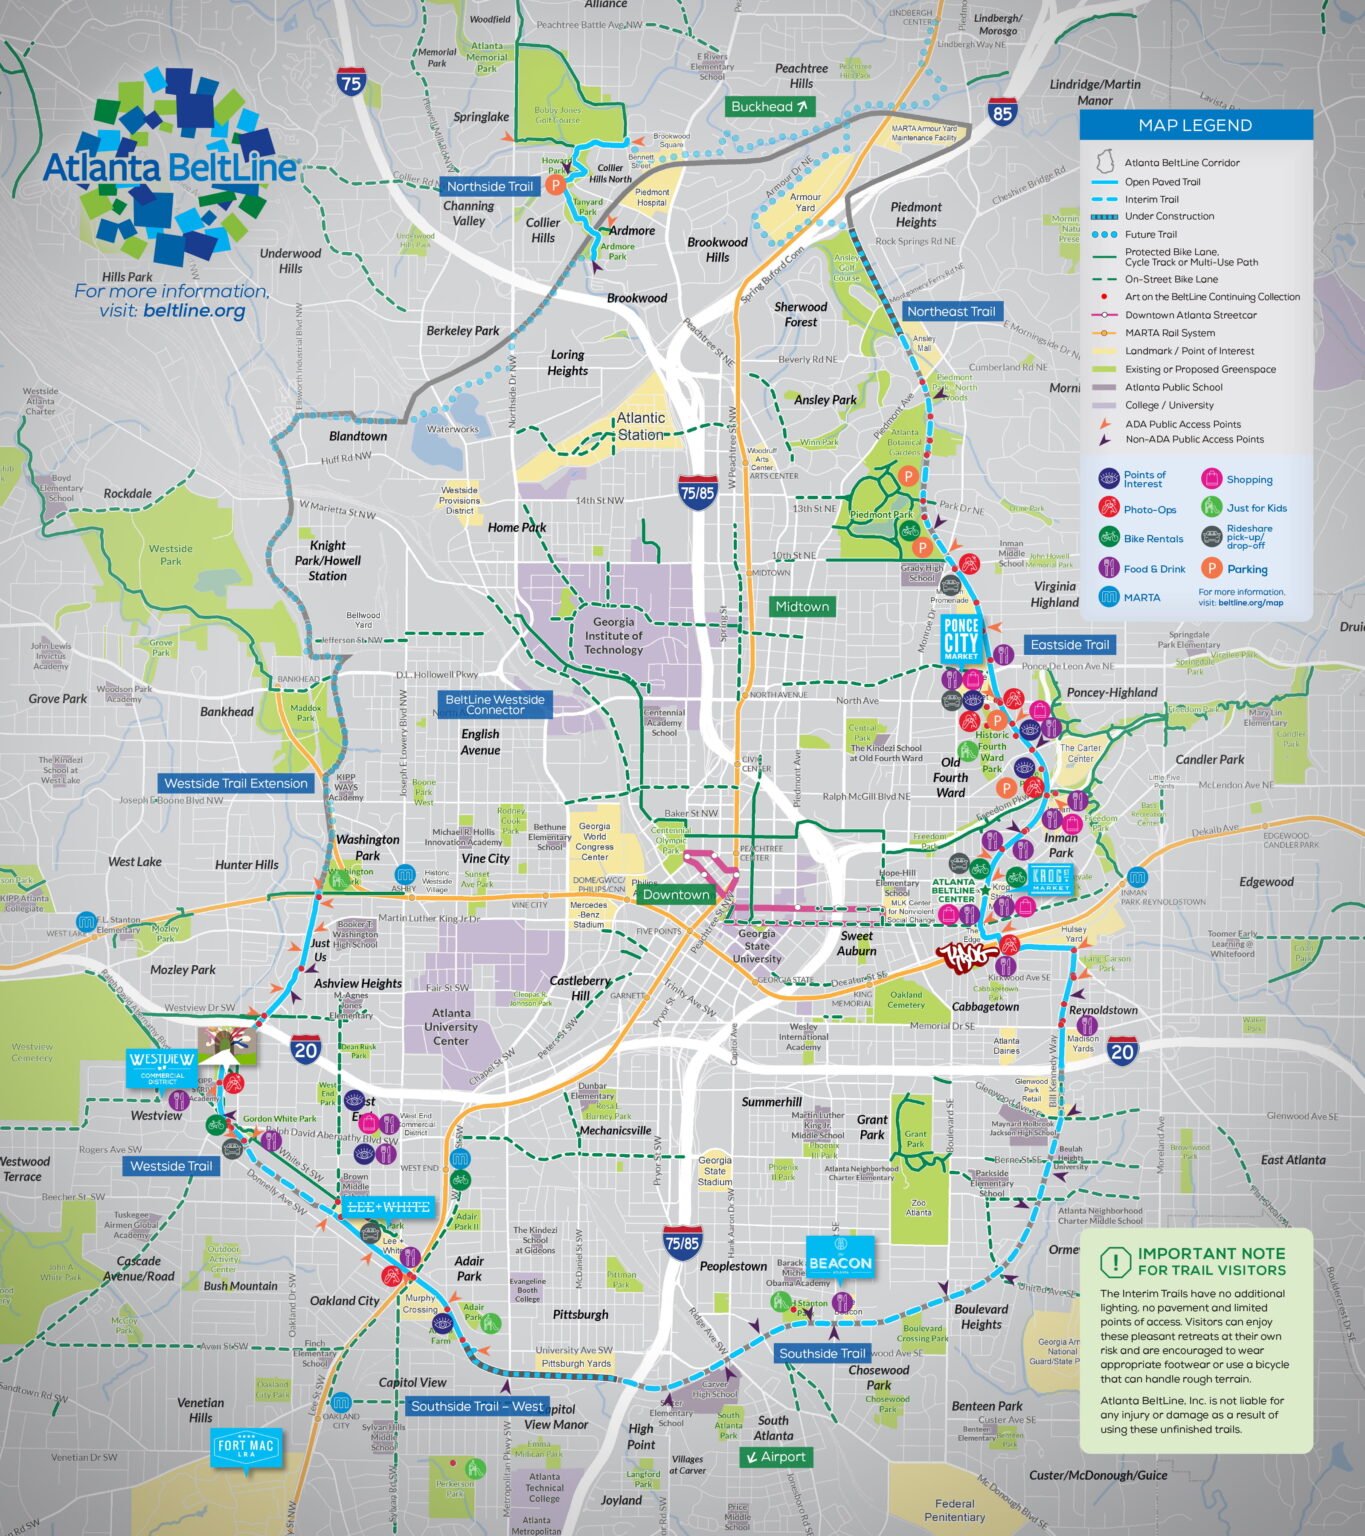 Atlanta BeltLine Trail Maps 2020 Digital Edition 1 1365x1536 